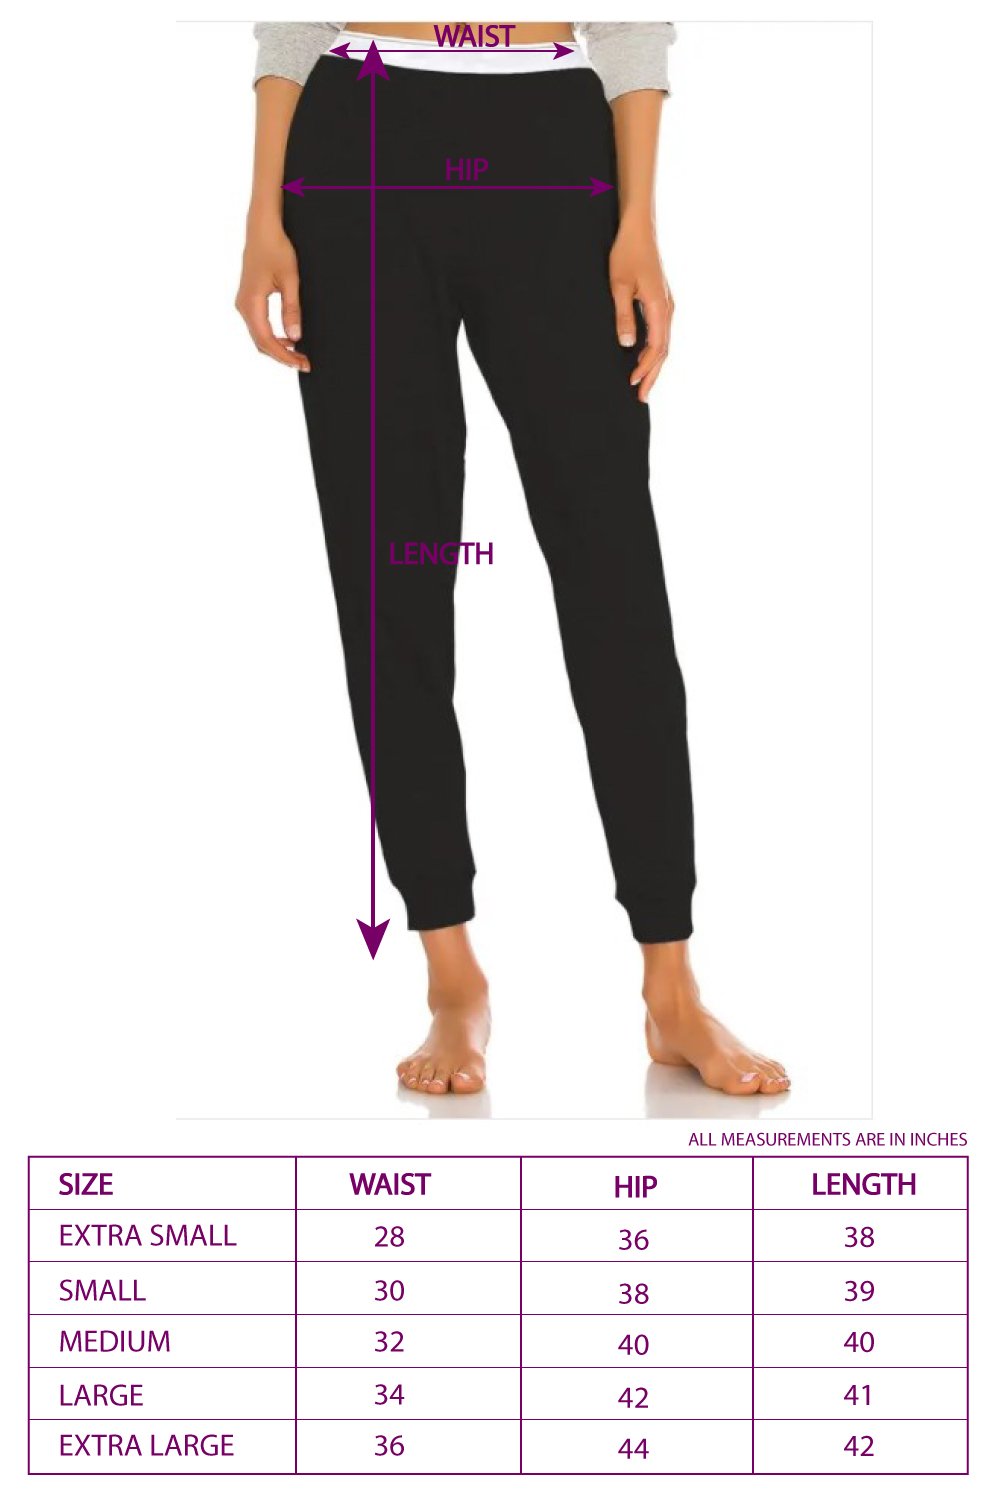 Elastic Waist Pants vs. Non-Elastic Waist Pants